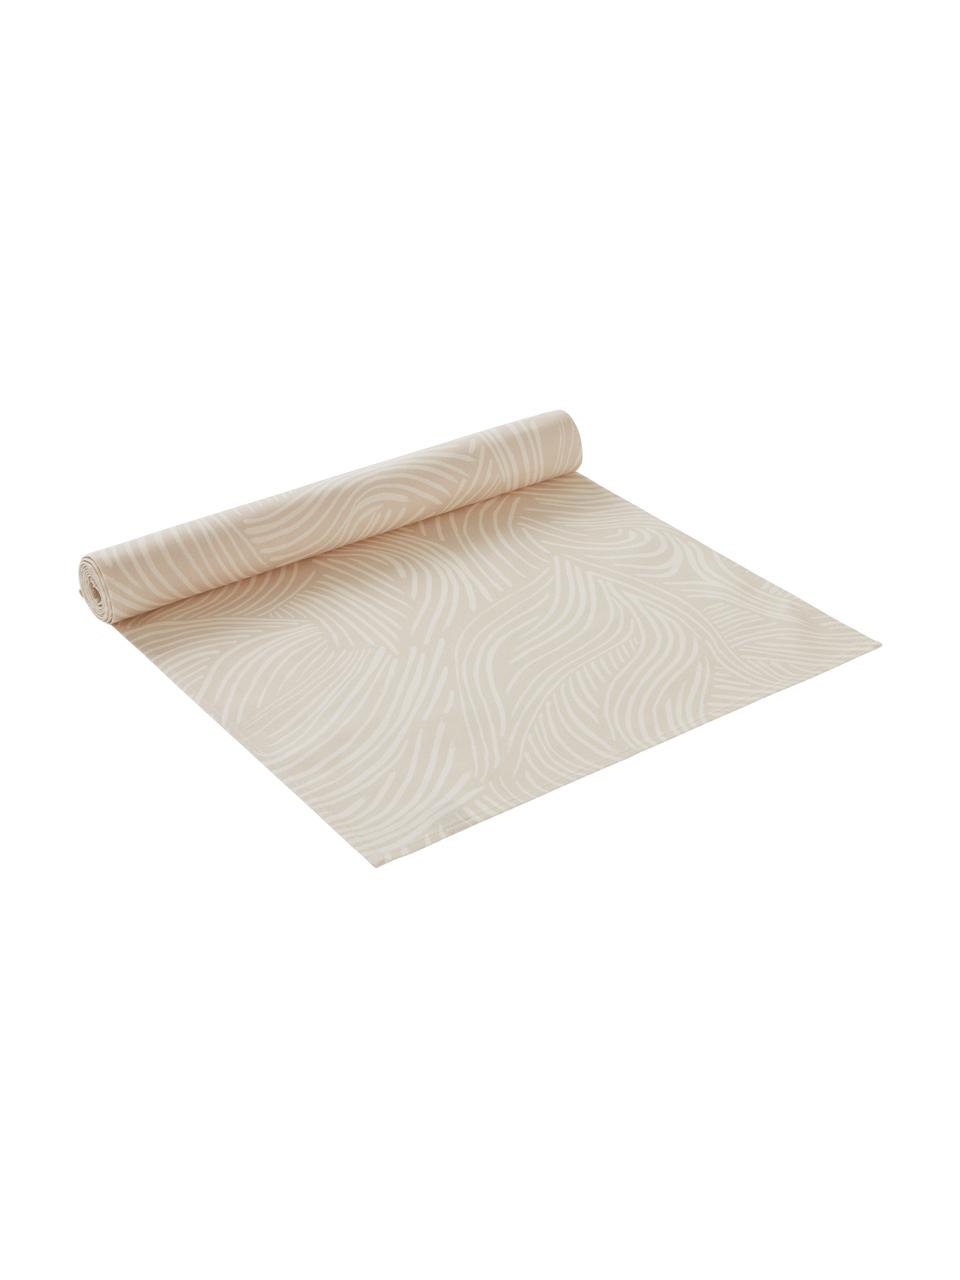 Baumwoll-Tischläufer Vida in Beige mit feinen Linien, 100% Baumwolle, Beige, 40 x 140 cm